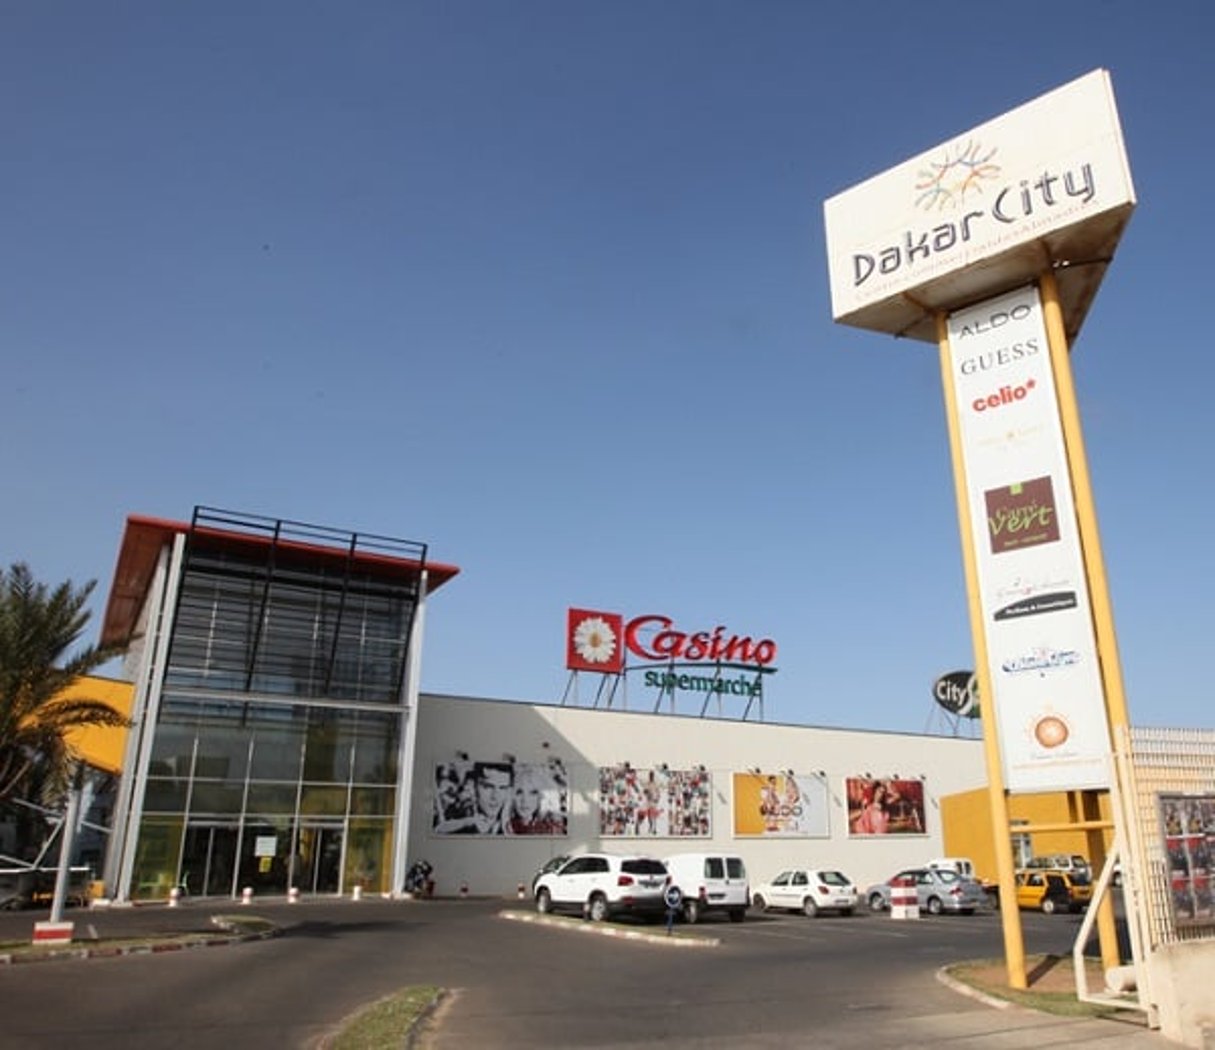 Un des supermarchés Casino implantés à Dakar © Mercure International Group